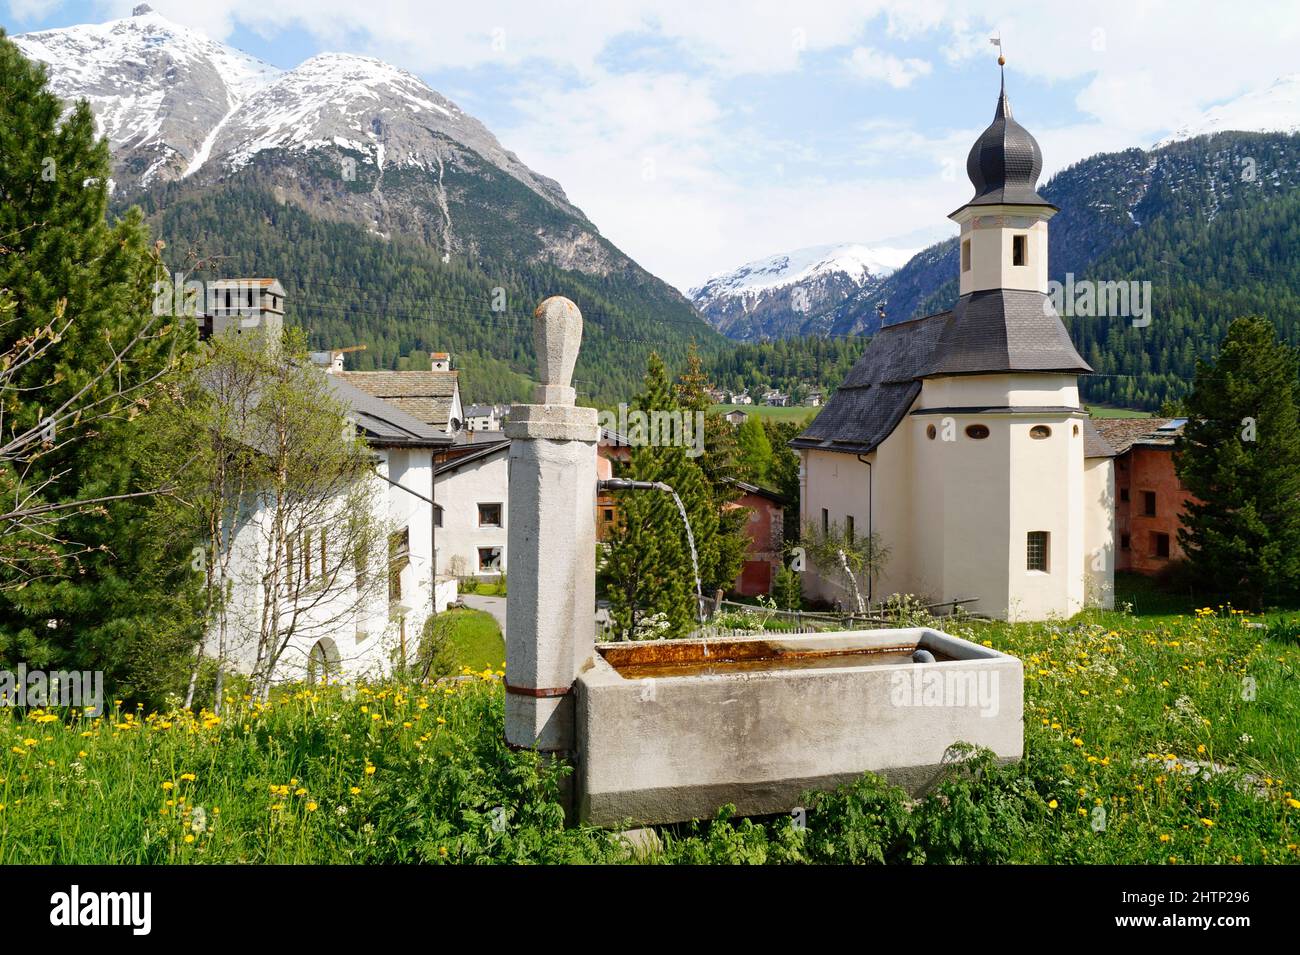 Vieilles maisons pittoresques et une ancienne église dans la région d'Engiadina Bassa, canton suisse de Graubuenden Banque D'Images